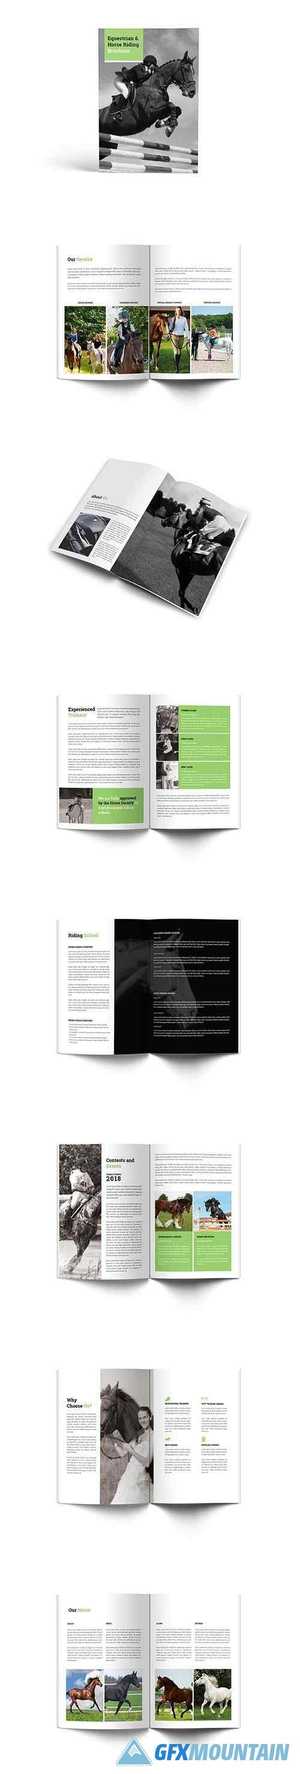 Equestrian & Horse Riding A4 Brochure